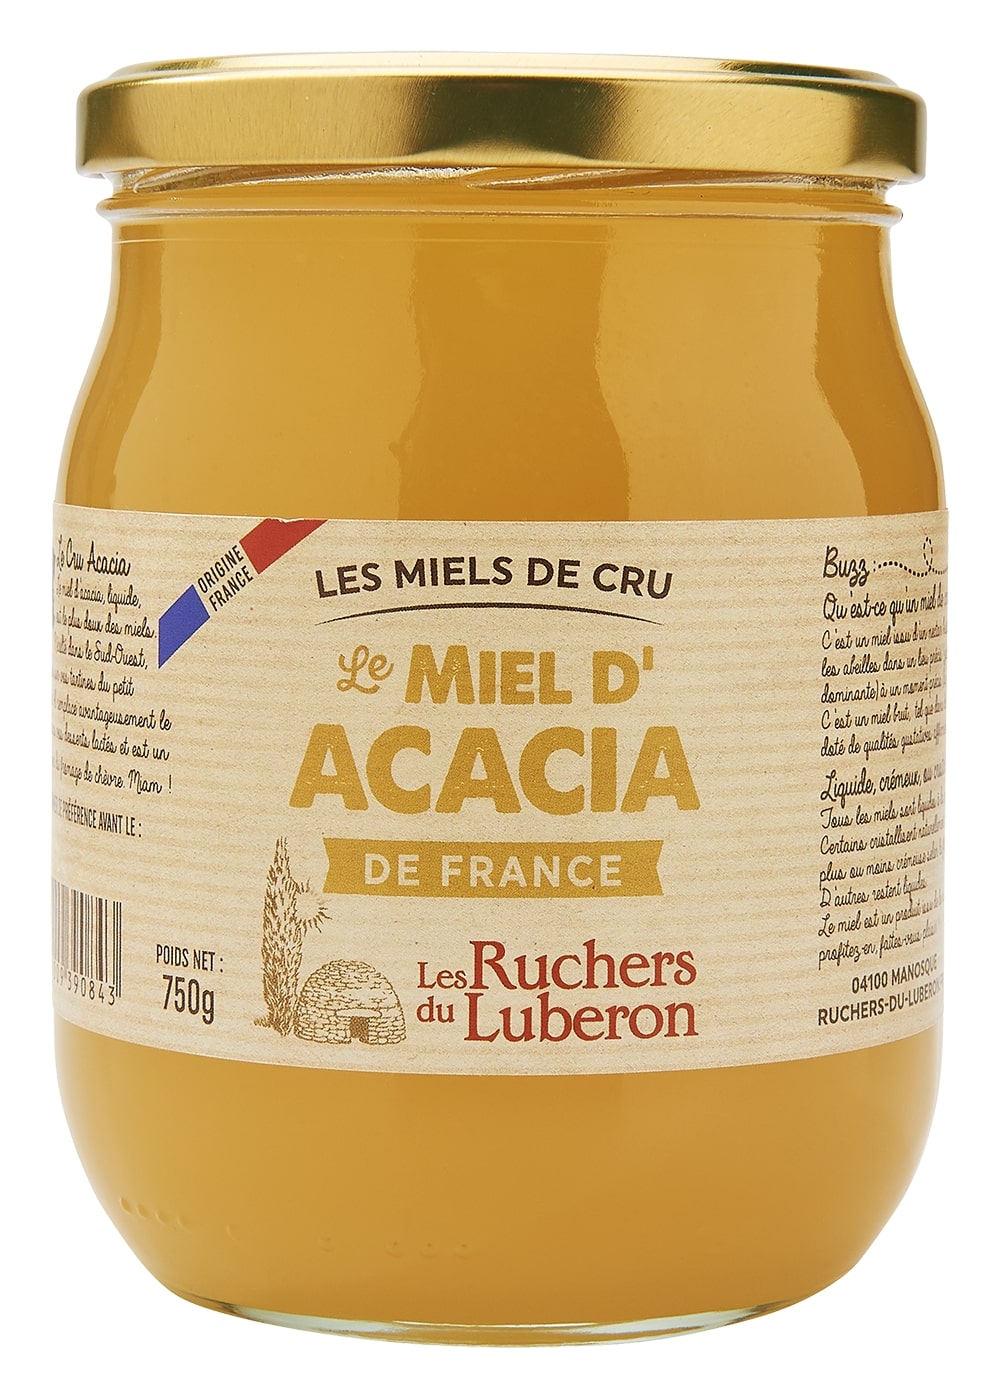 miel d'acacia de France